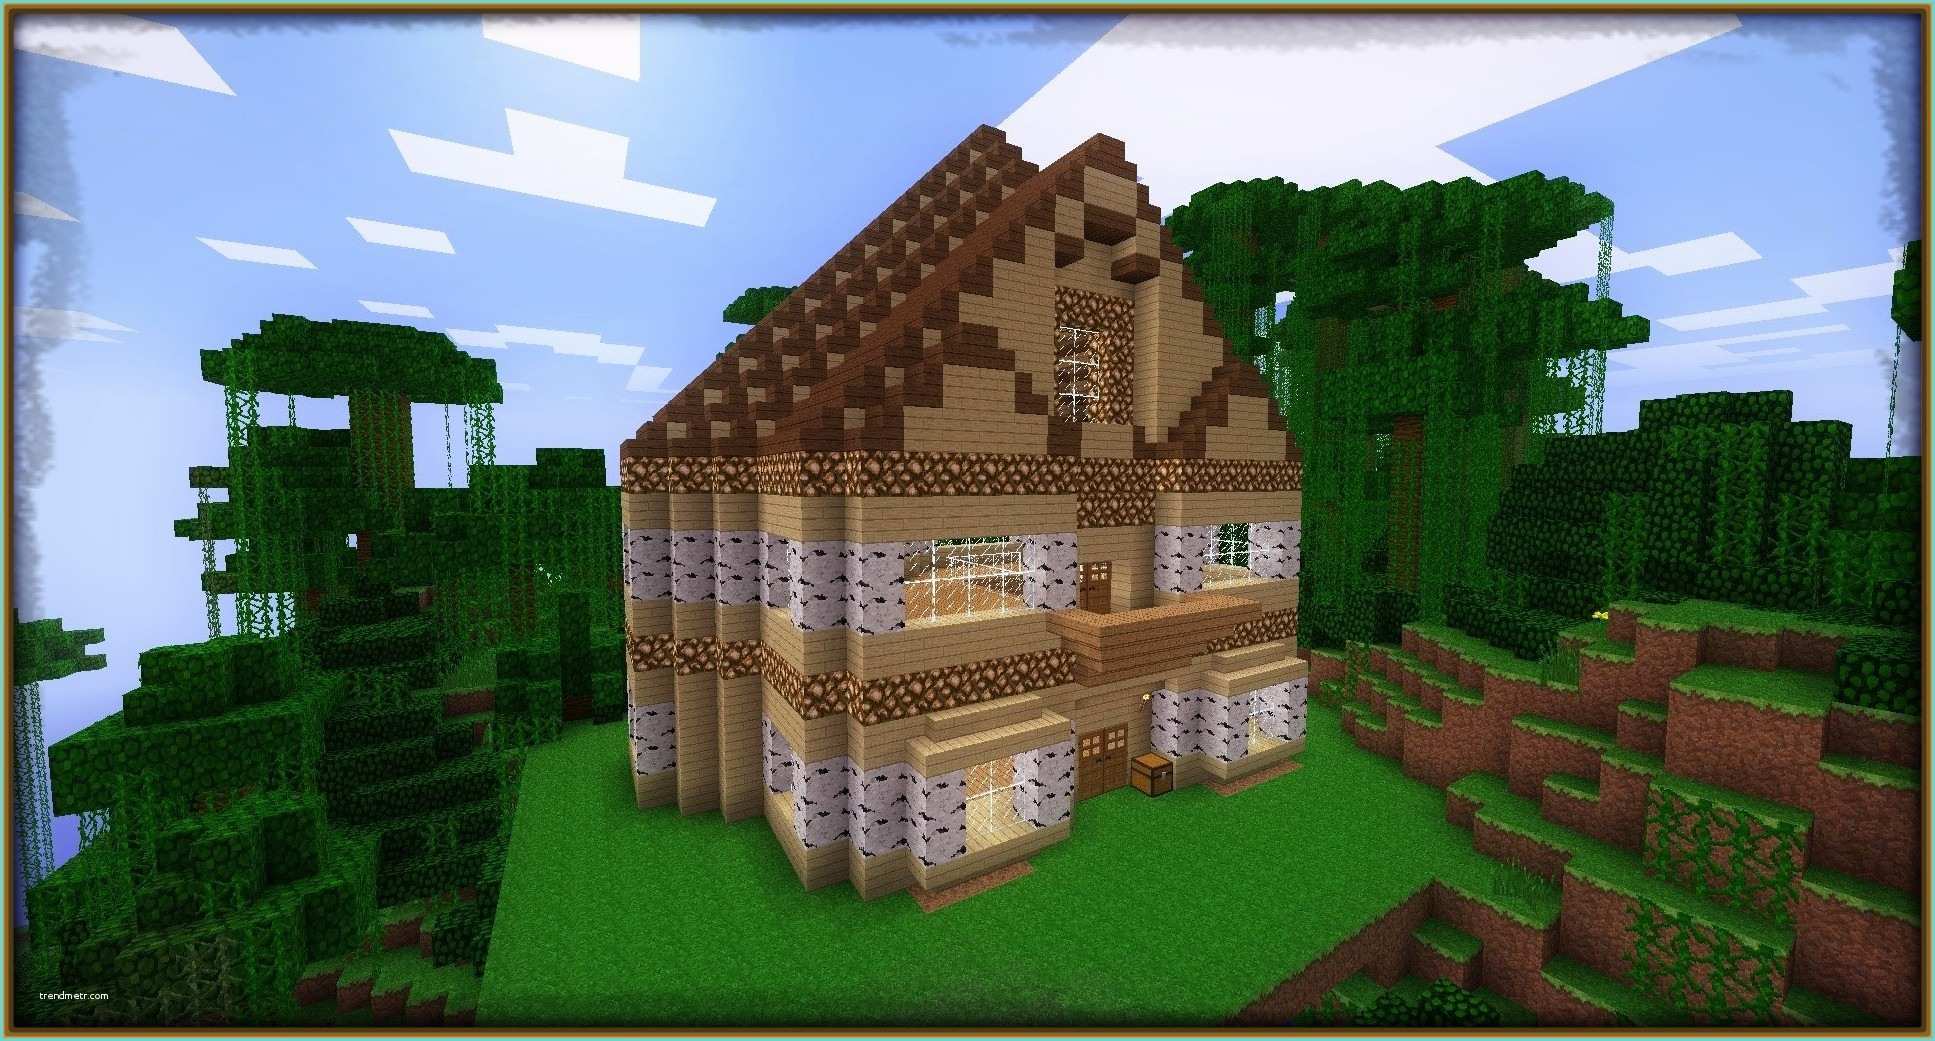 La Mejor Casa En Minecraft Fotos De Casas Bonitas En Minecraft Archivos